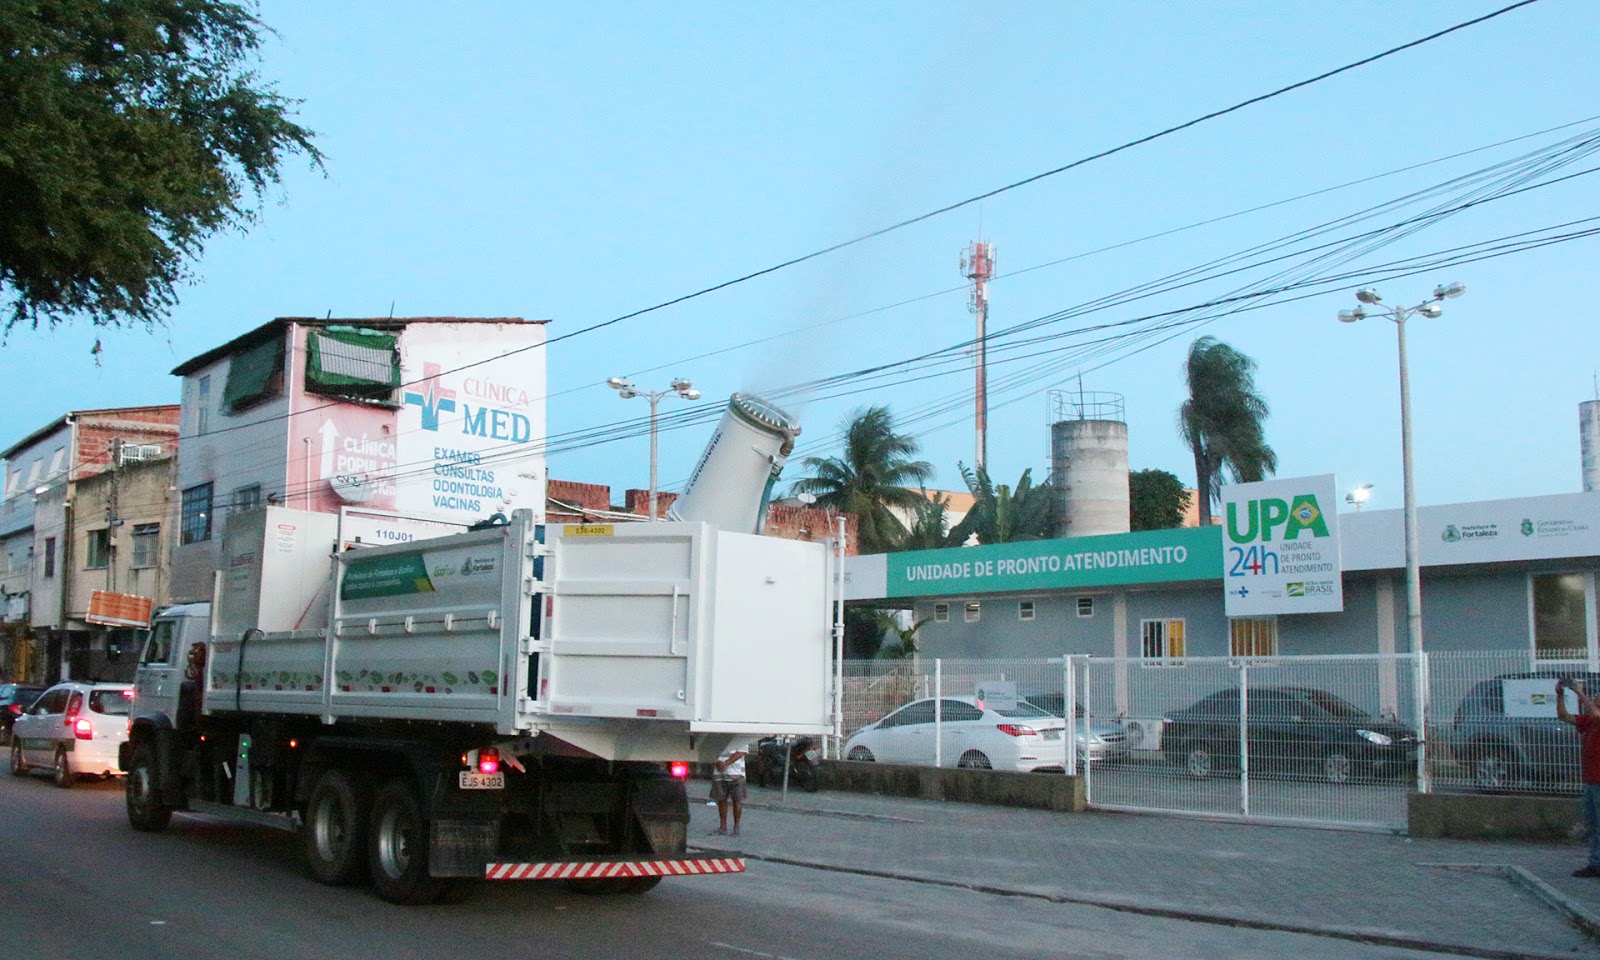 Pin de Jackson Almeida Sousa em caminhões  Fotos de caminhão rebaixado,  Caminhões grandes, Imagens de caminhão